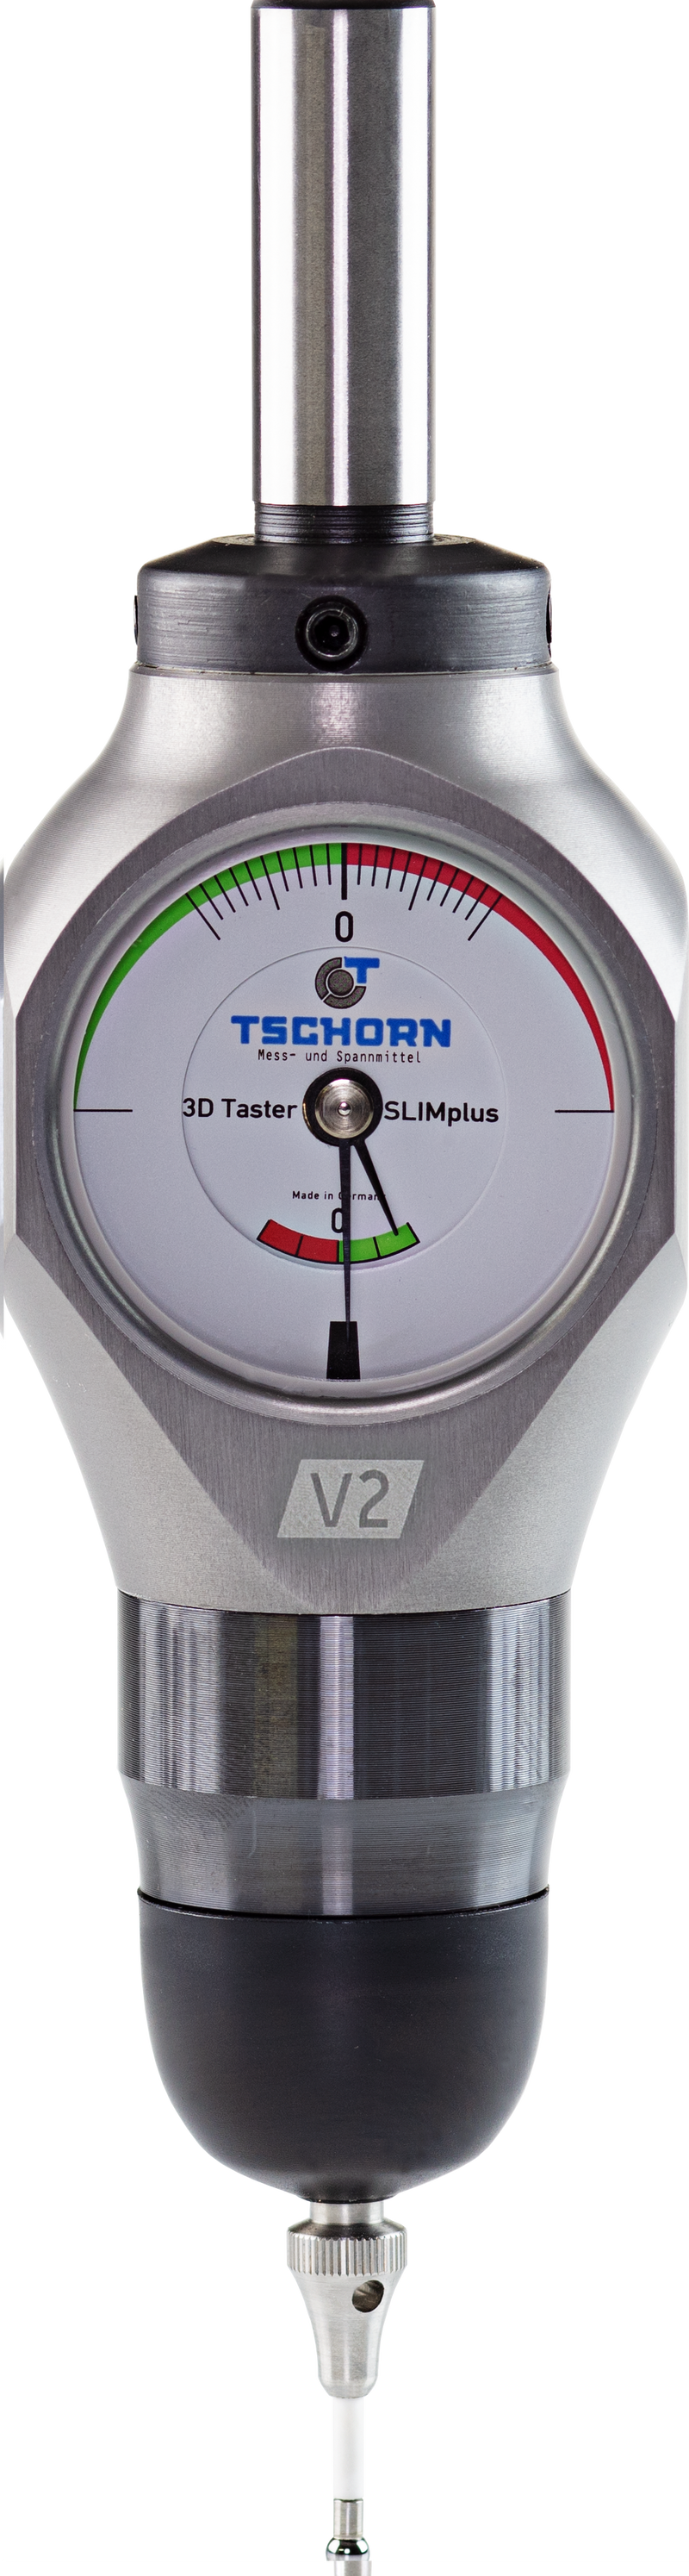 TSCHORN SLIMplus 3D Tester Edge Finder V2, 1/2" (12.7mm) Shank, 0.11" (3mm) Sensing Tip, IP67, Waterproof, Dustproof